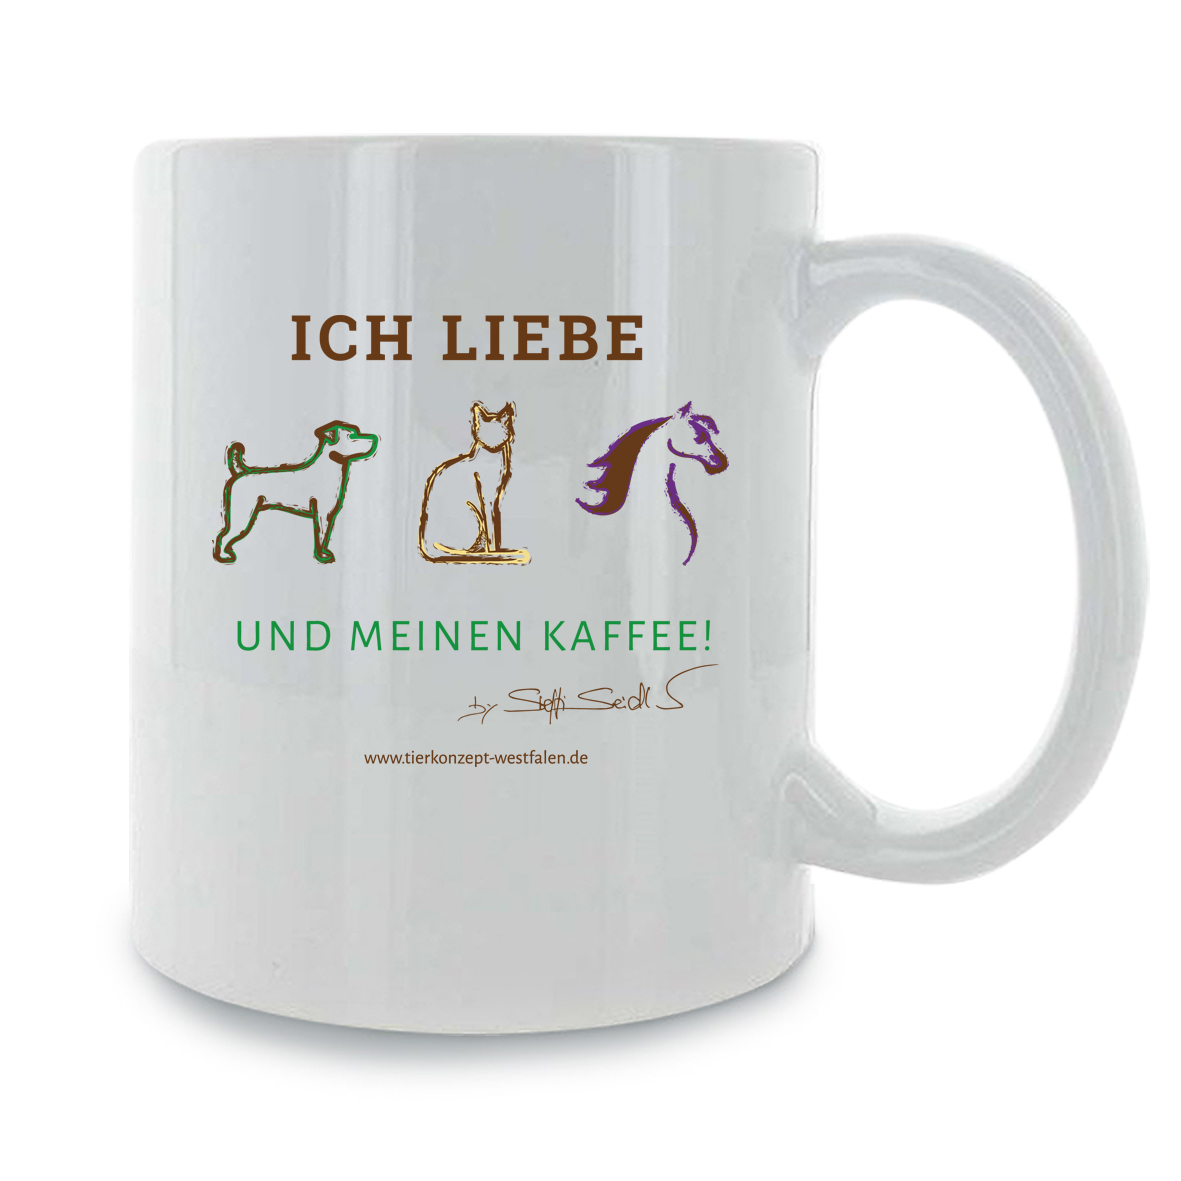 Tierkonzept Westfalen Kaffee Tasse "Kaffee"